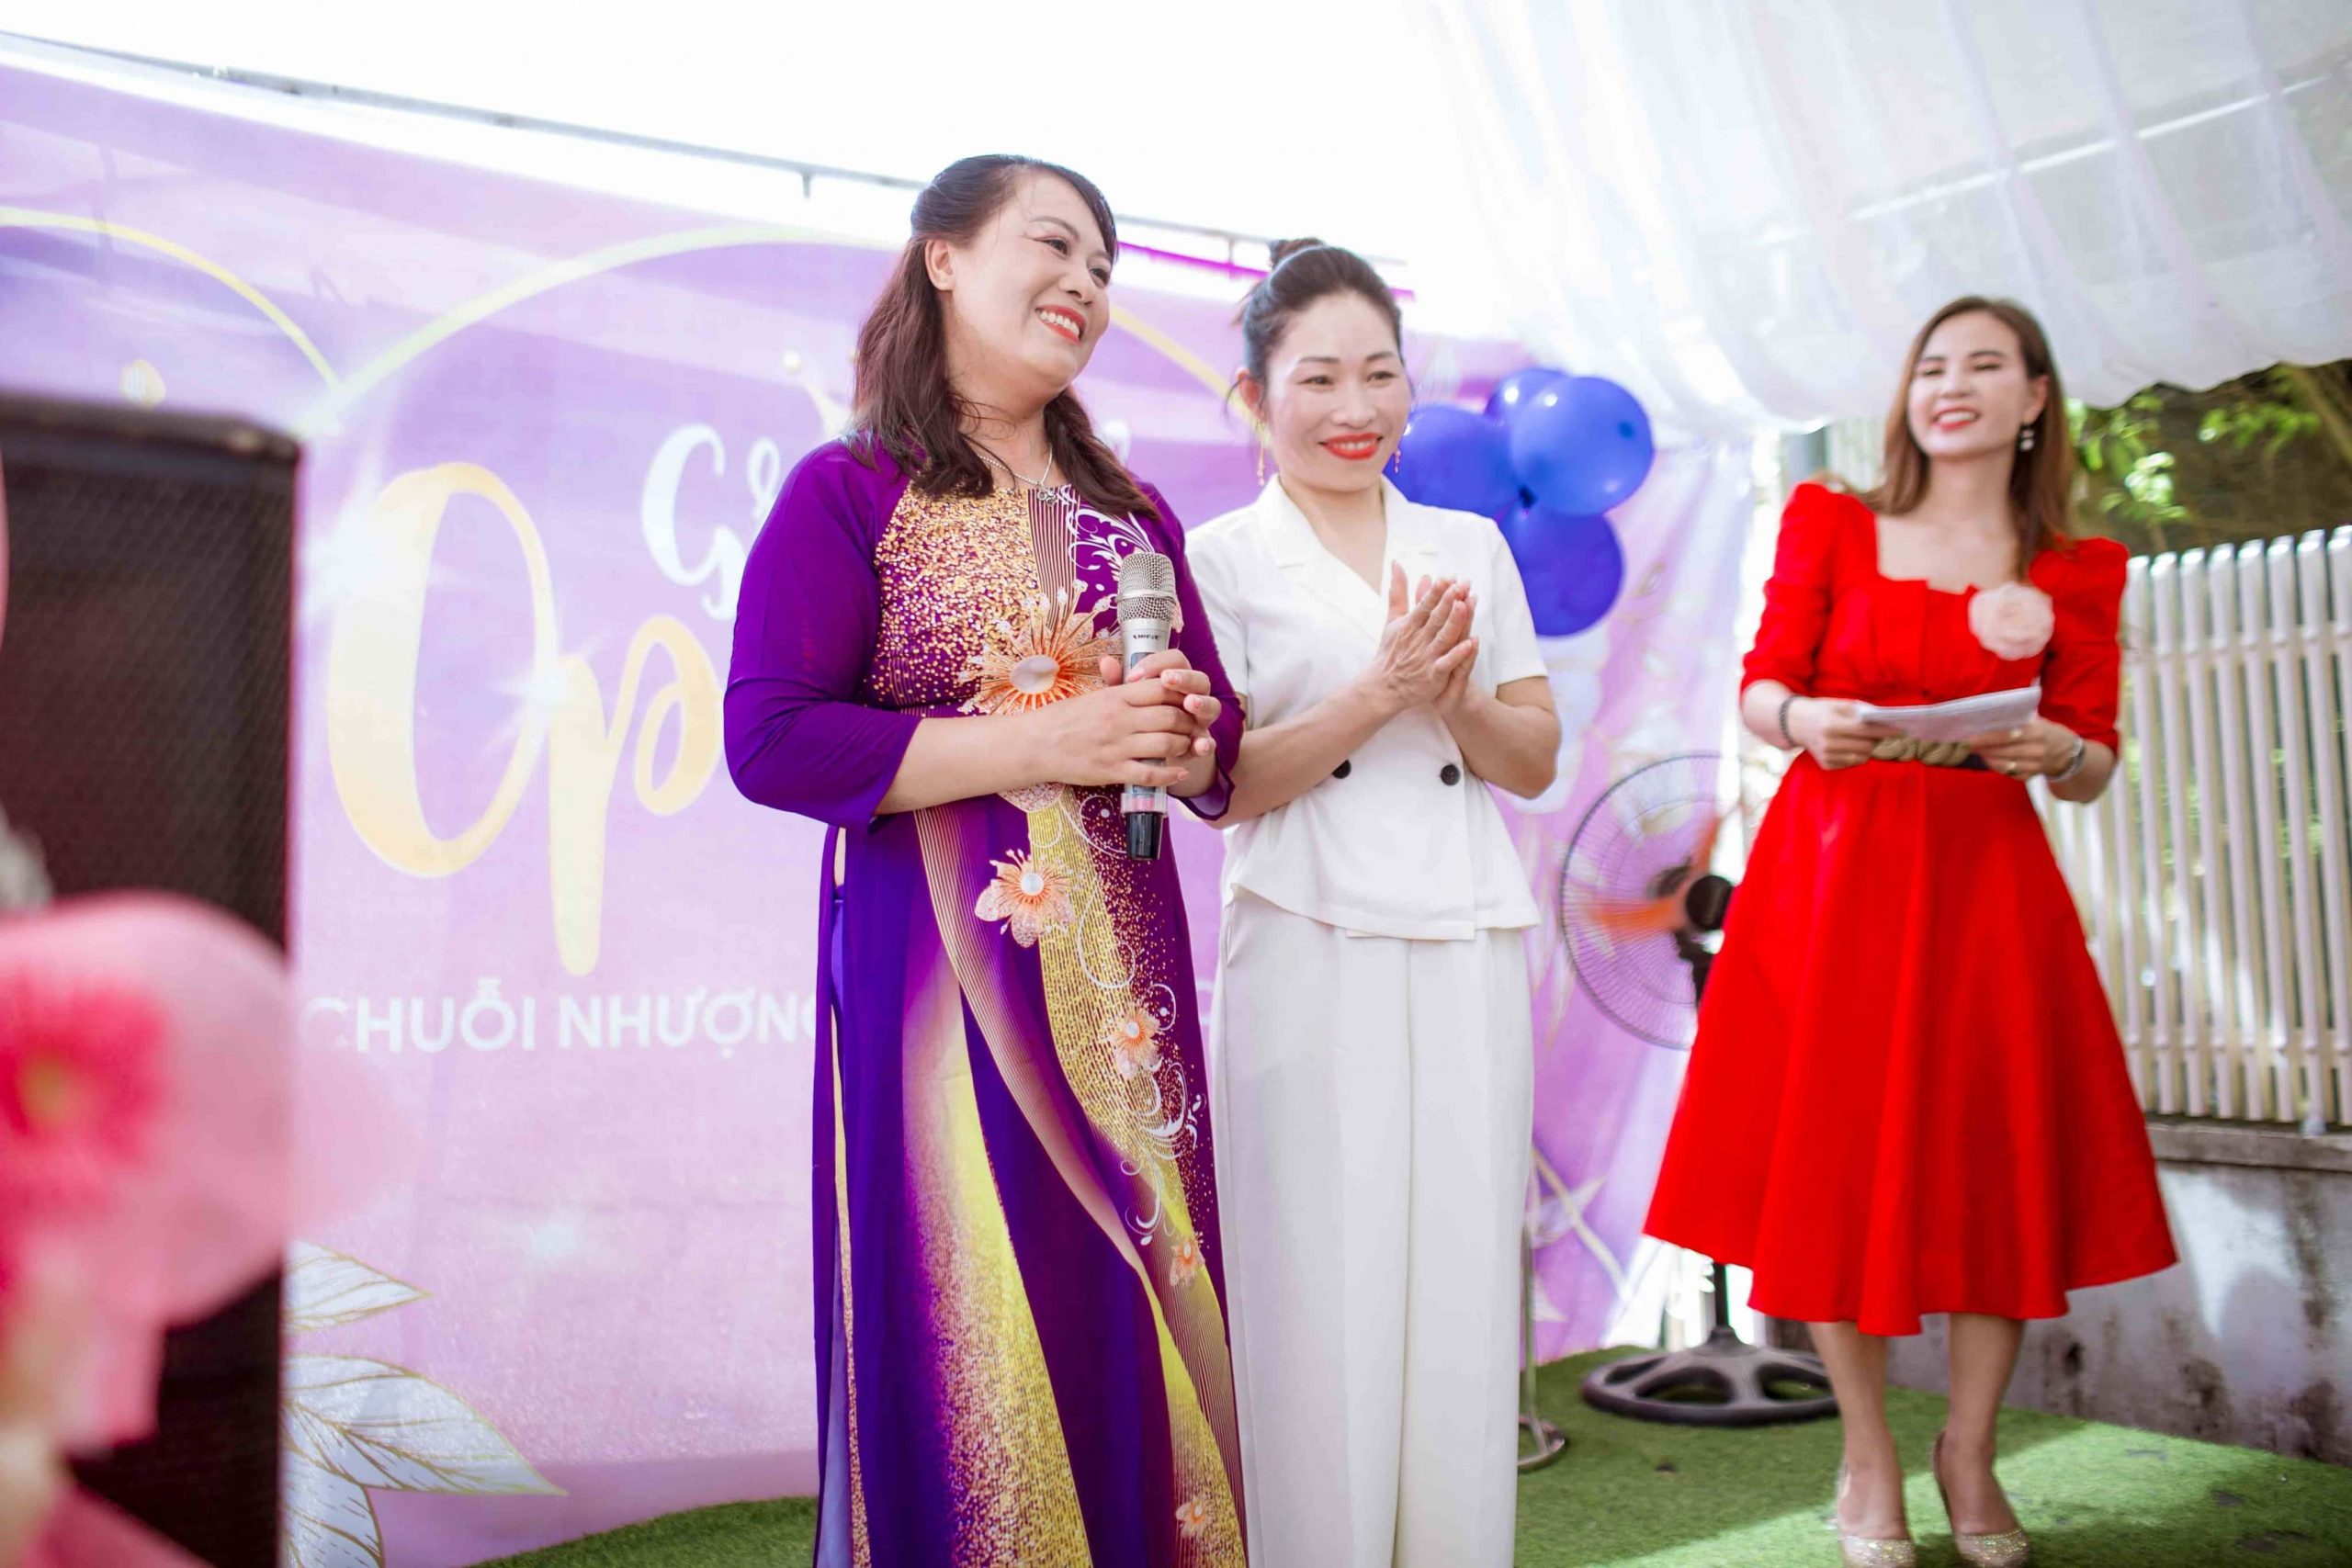 Tân giám đốc Nguyễn Thị Công phát biểu trong buổi lễ khai trương cám ơn tổng giám đốc Đặng Thị Bắc và toàn bộ công ty, chuỗi nhượng quyền thương hiệu Spa Cerabe